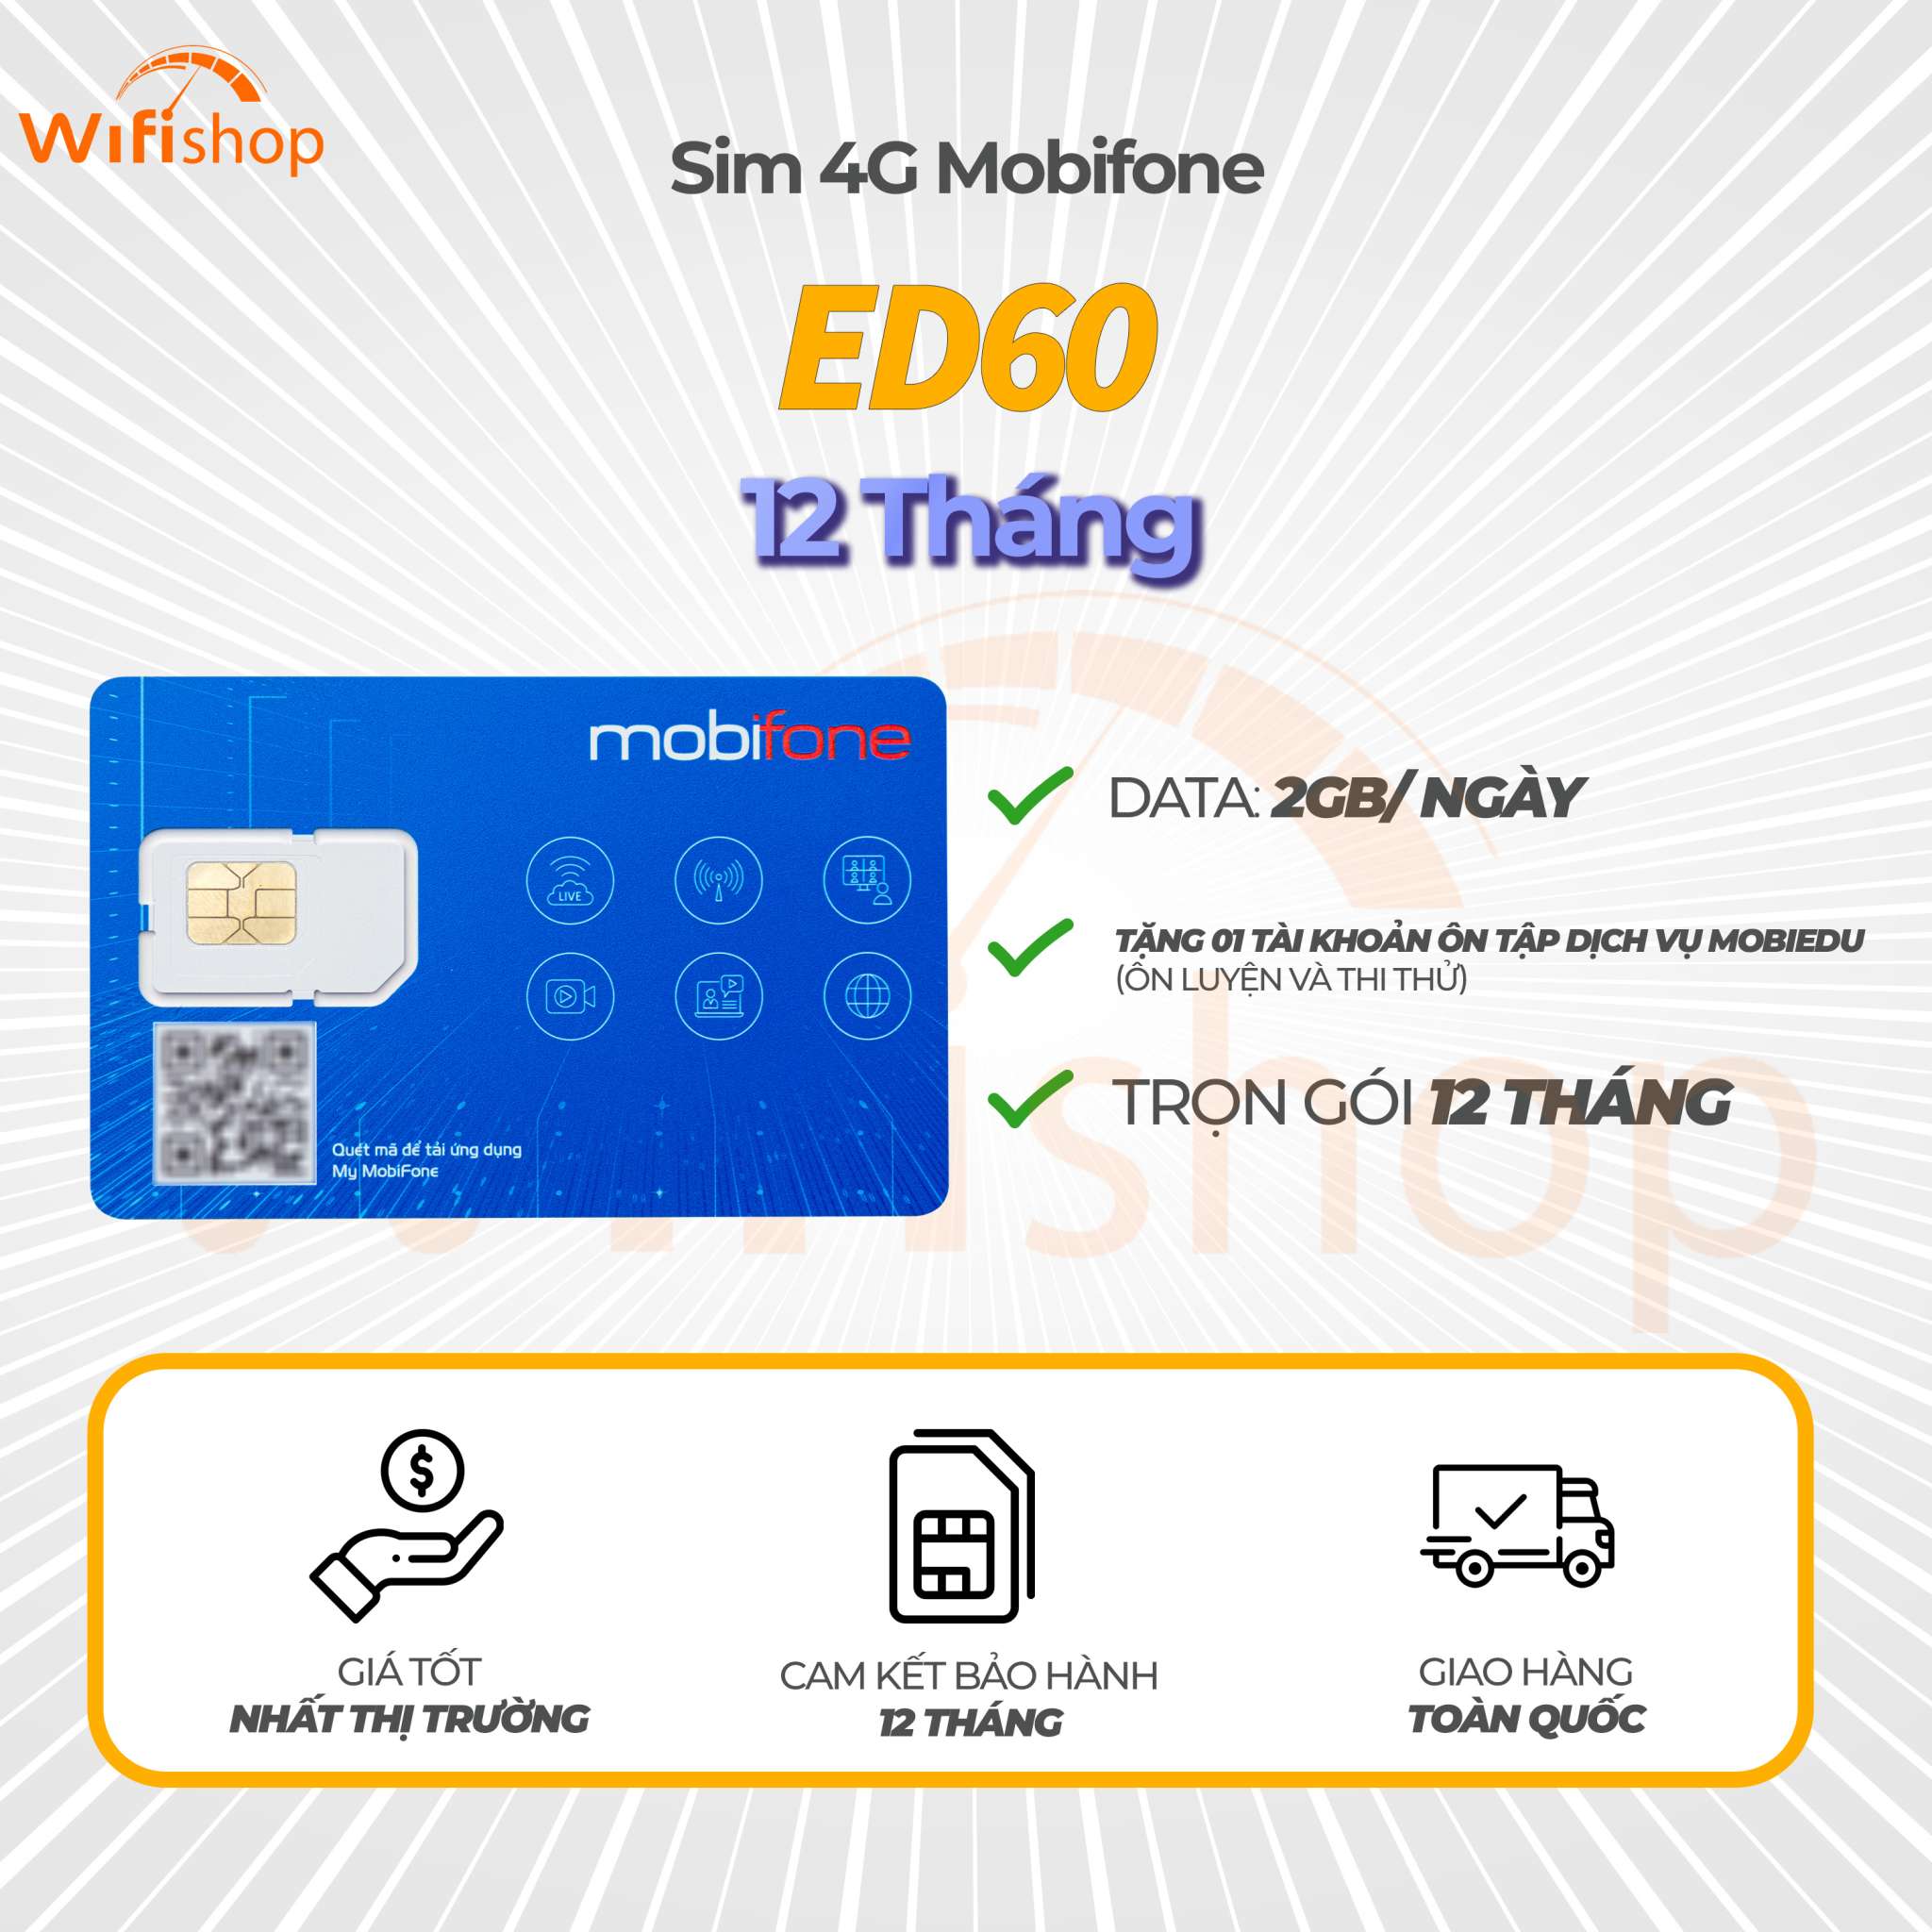 Sim Mobifone 4G ED60 ưu đãi 2GB/ ngày, hạ băng thông 5Mbps, 12 tháng không nạp tiền